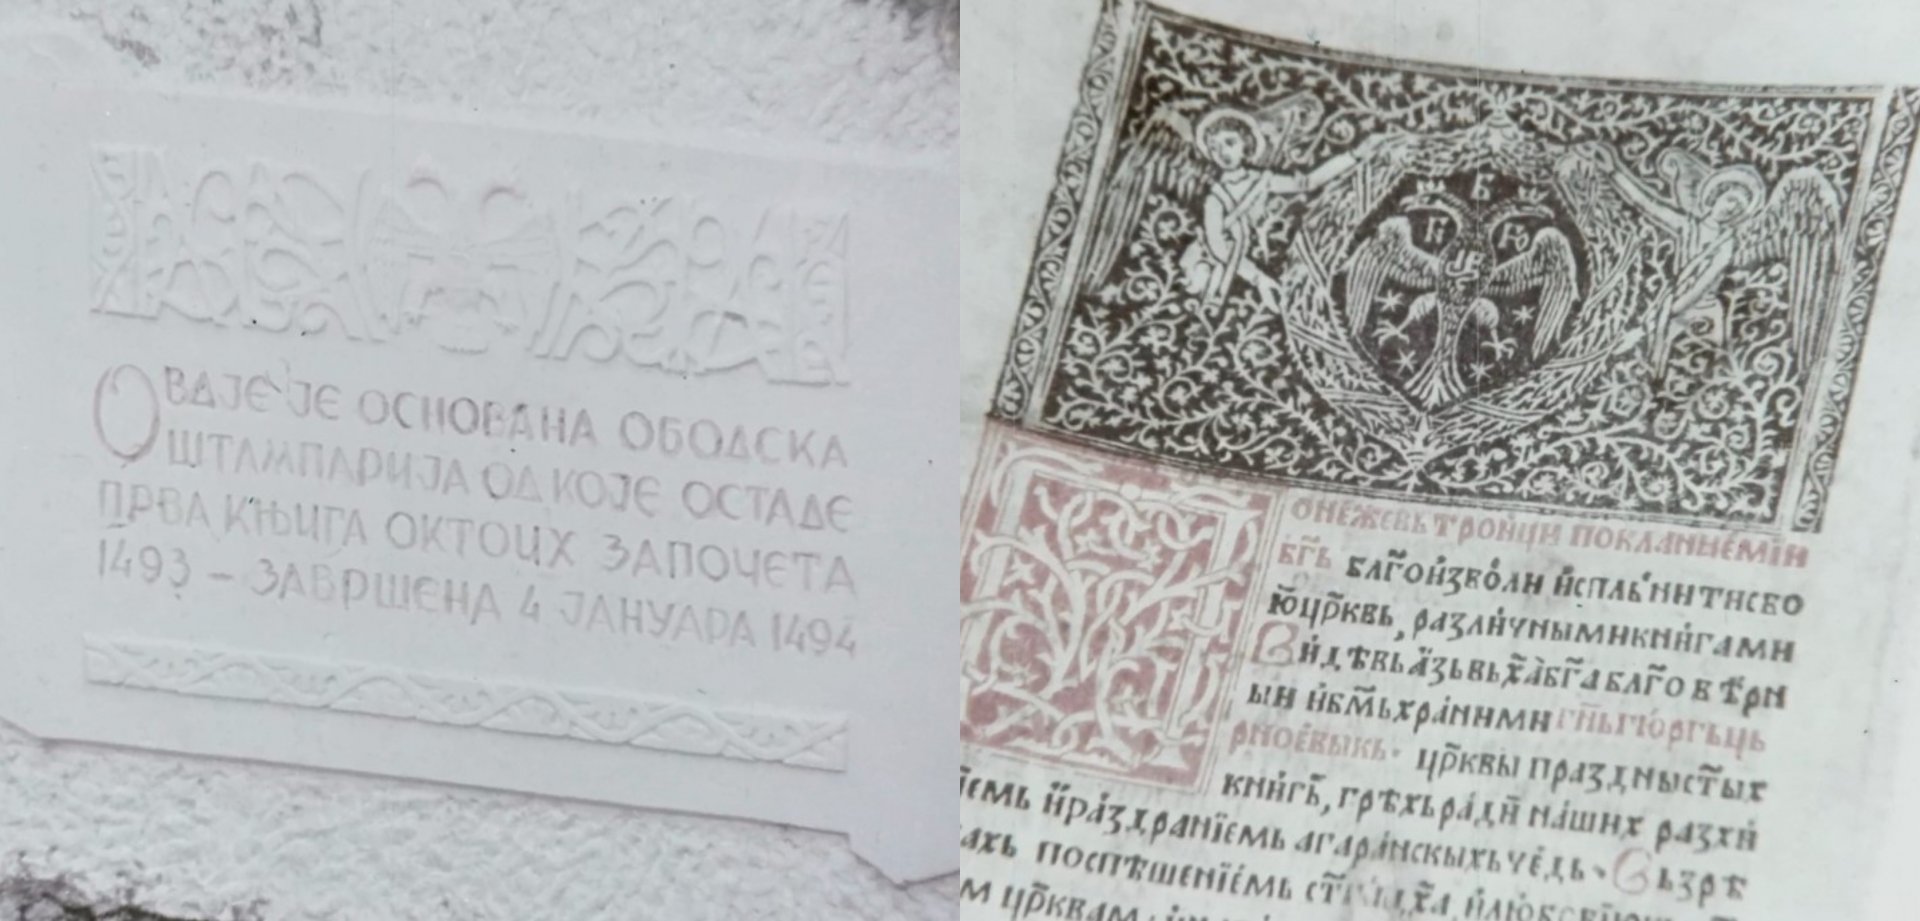 530 godina Oktoiha: Crna Gora je štampala knjige prije Oksforda, Beograda, Moskve